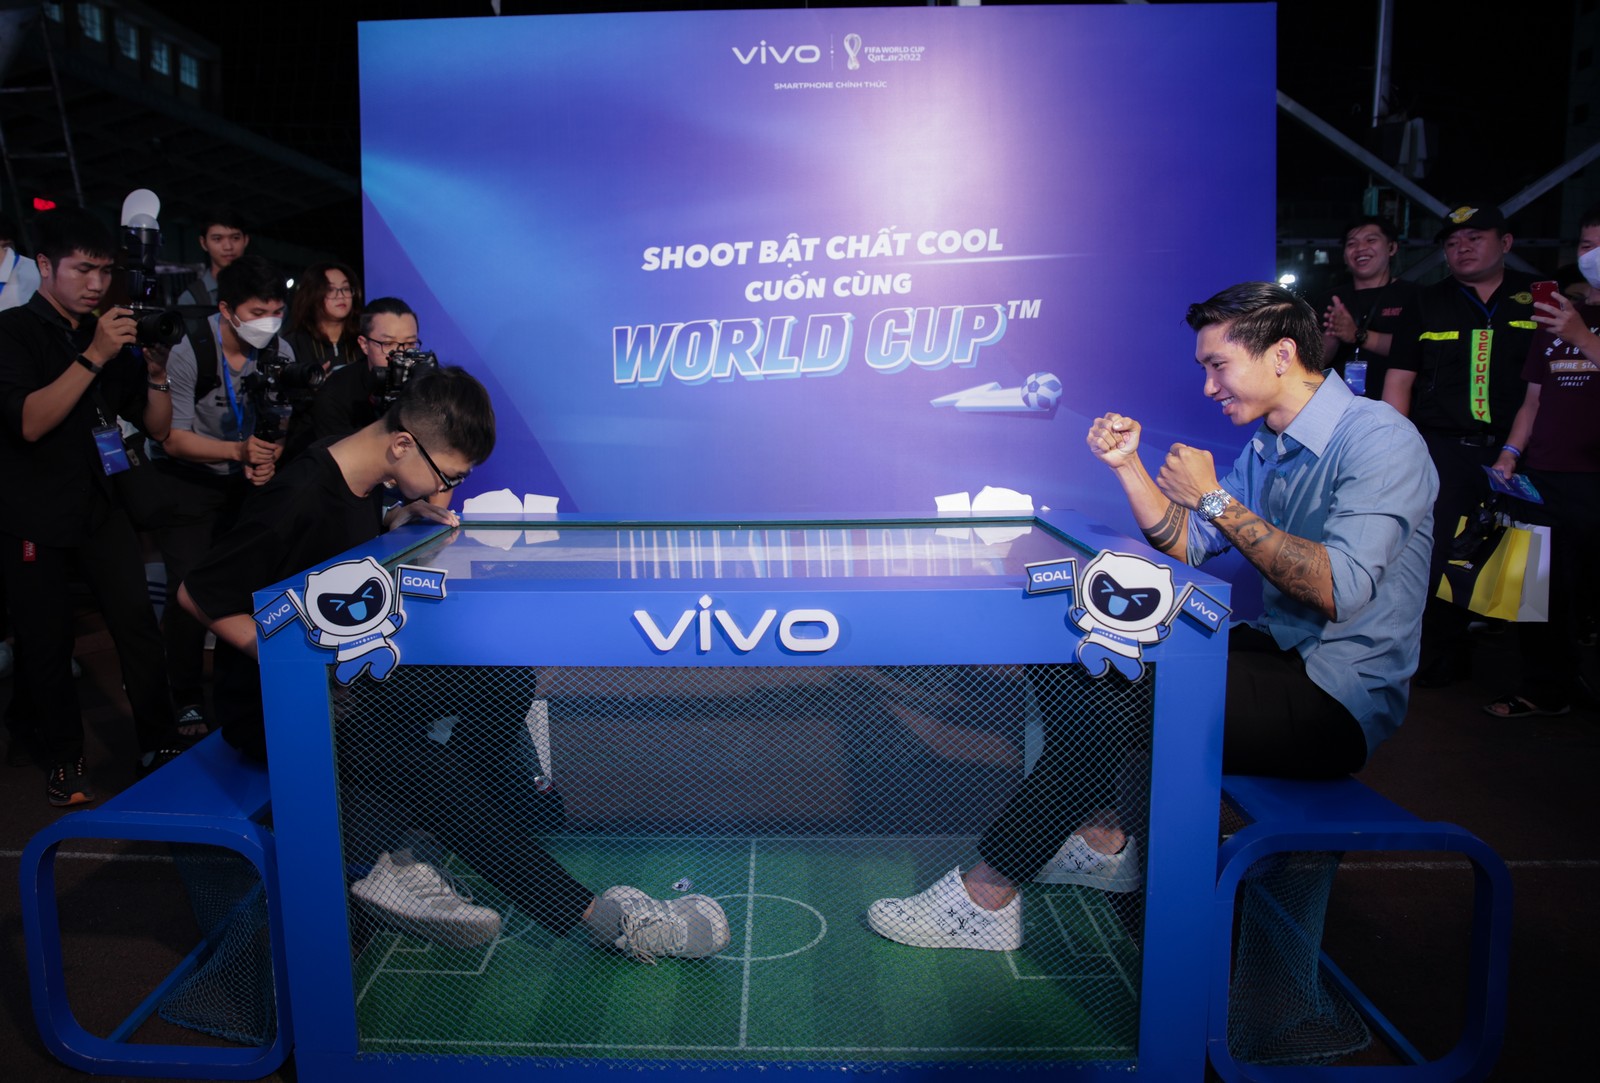 vivo tổ chức sự kiện xem bóng đá "Shoot bật chất cool cuốn cùng World Cup"